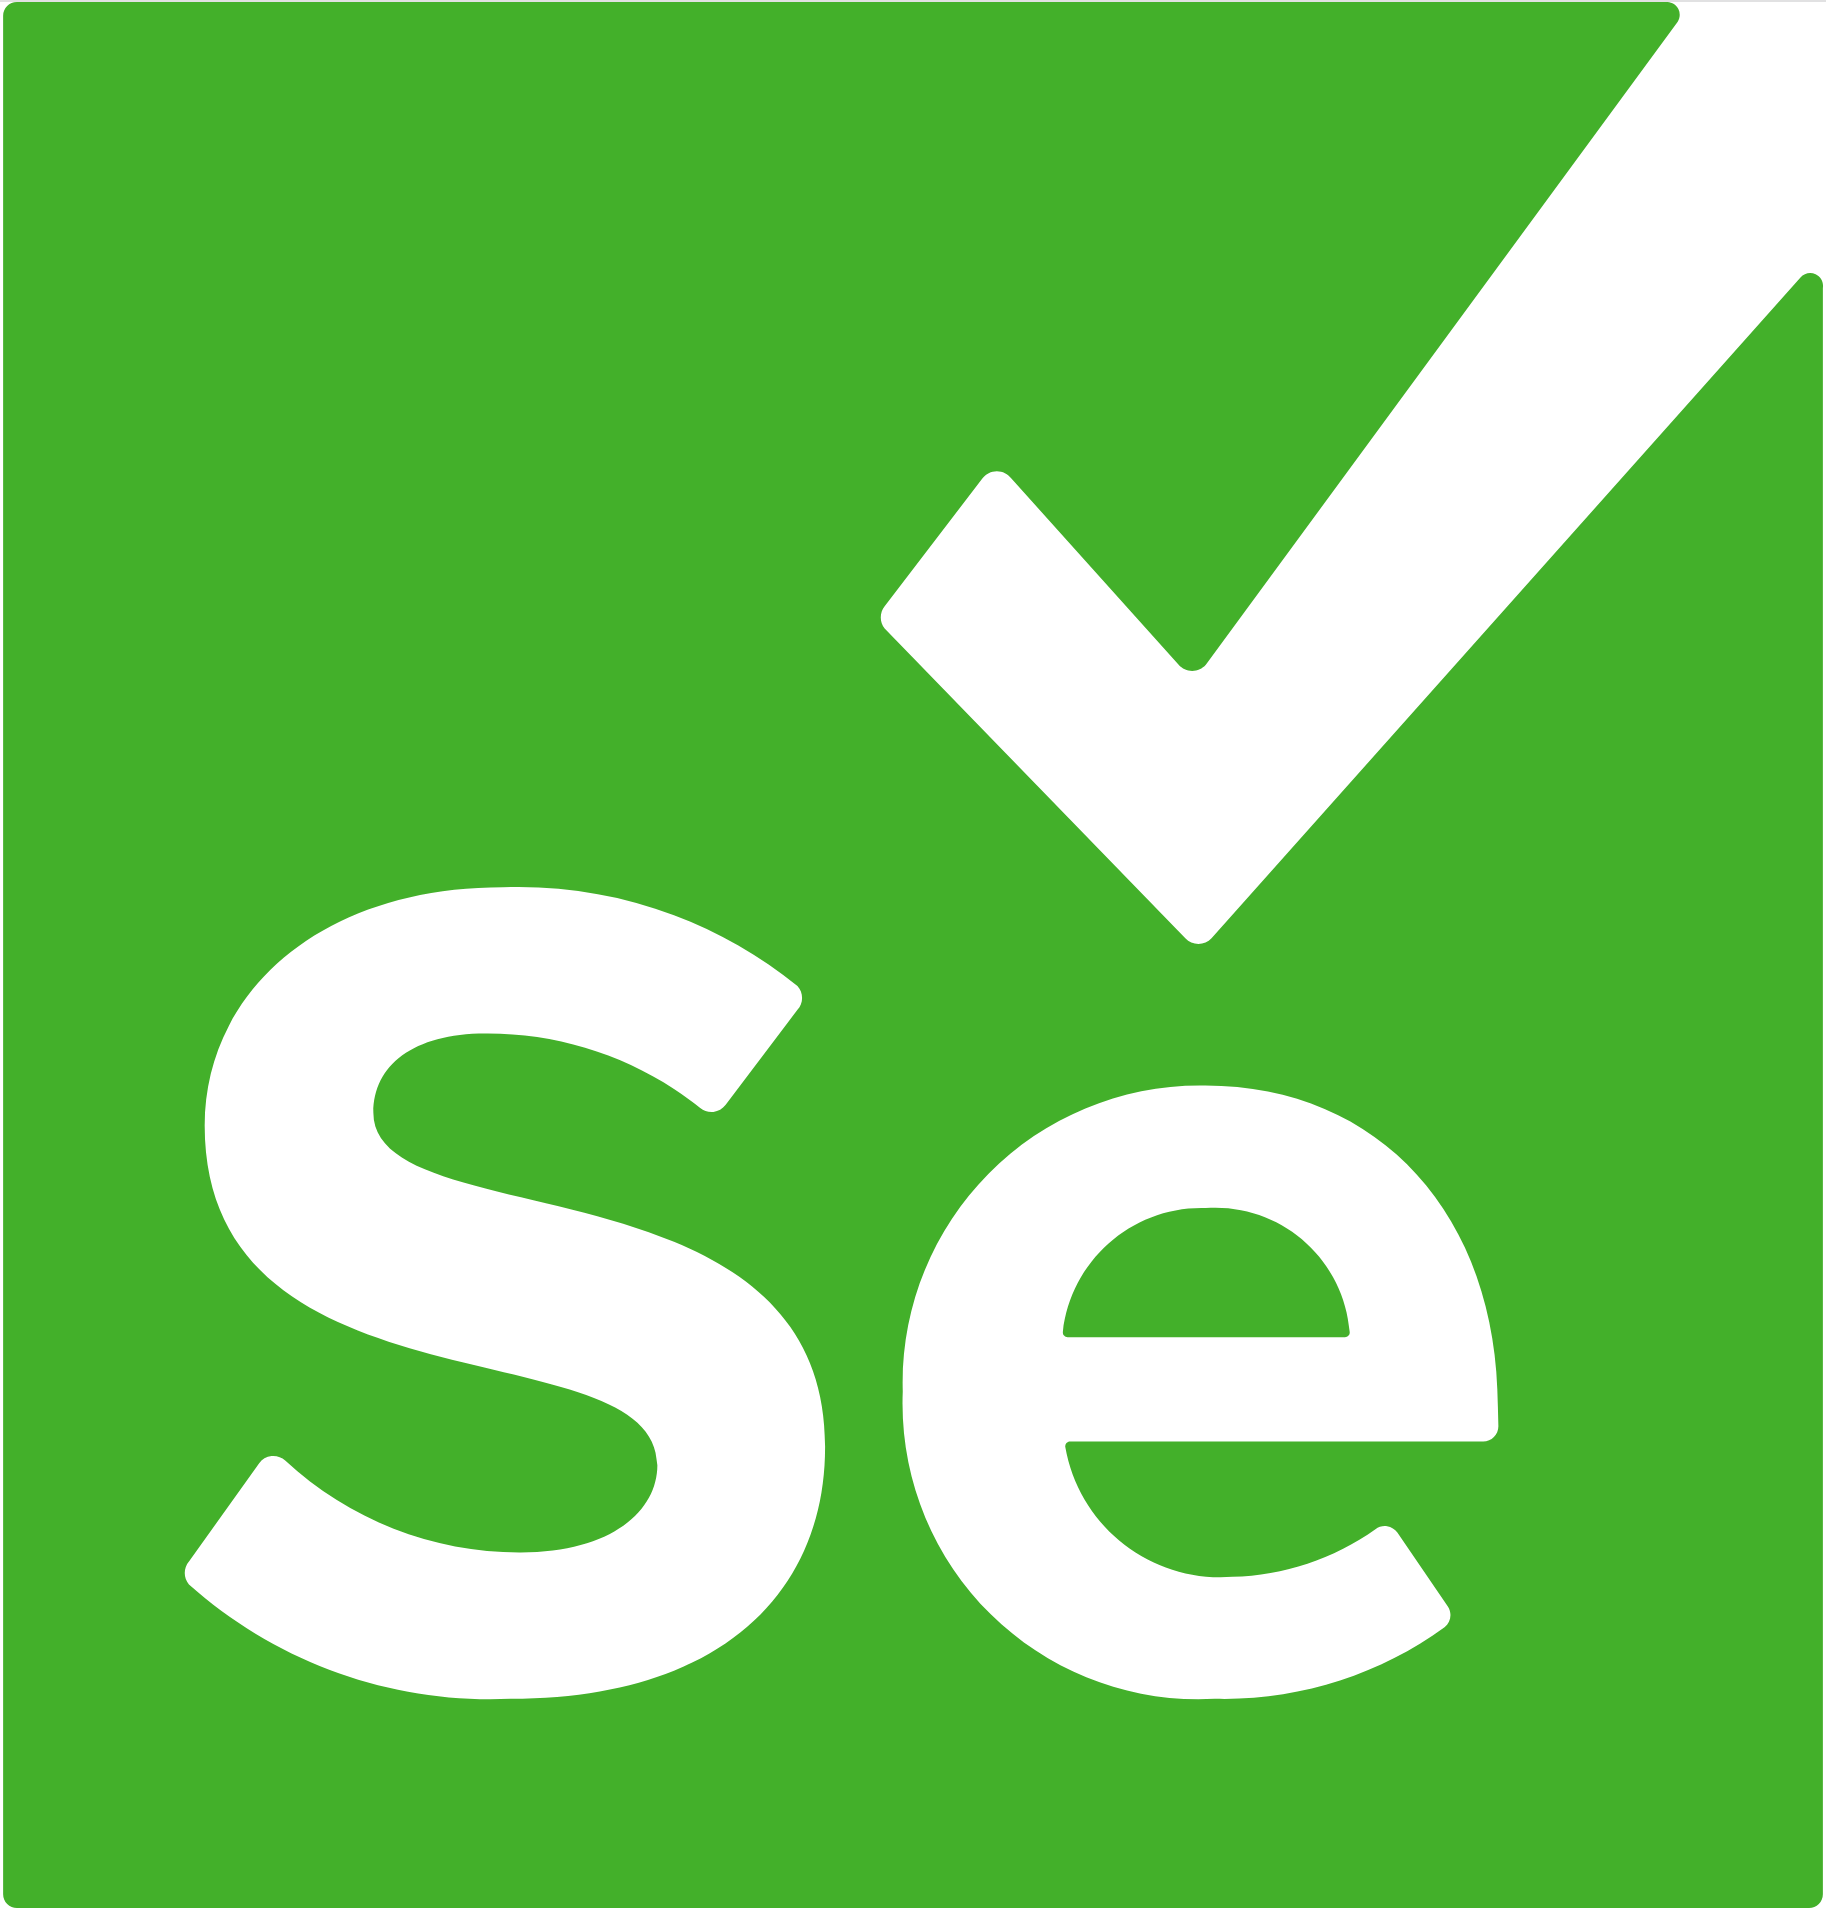 selenium logo.png